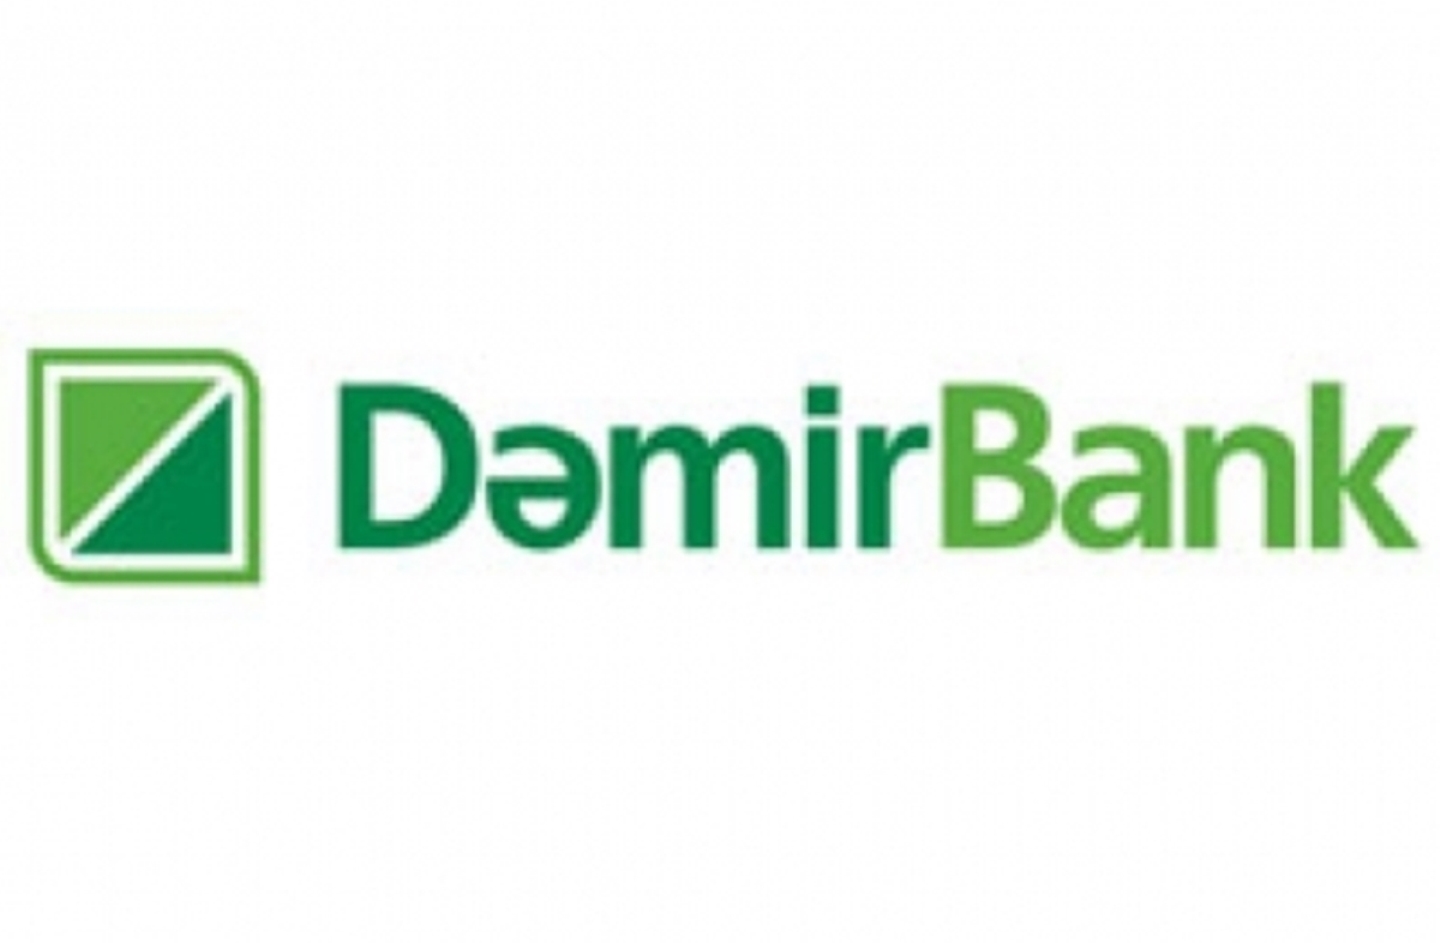 DemirBank начал в Губе новую льготную кредитную акцию «Дни без Комиссии» 